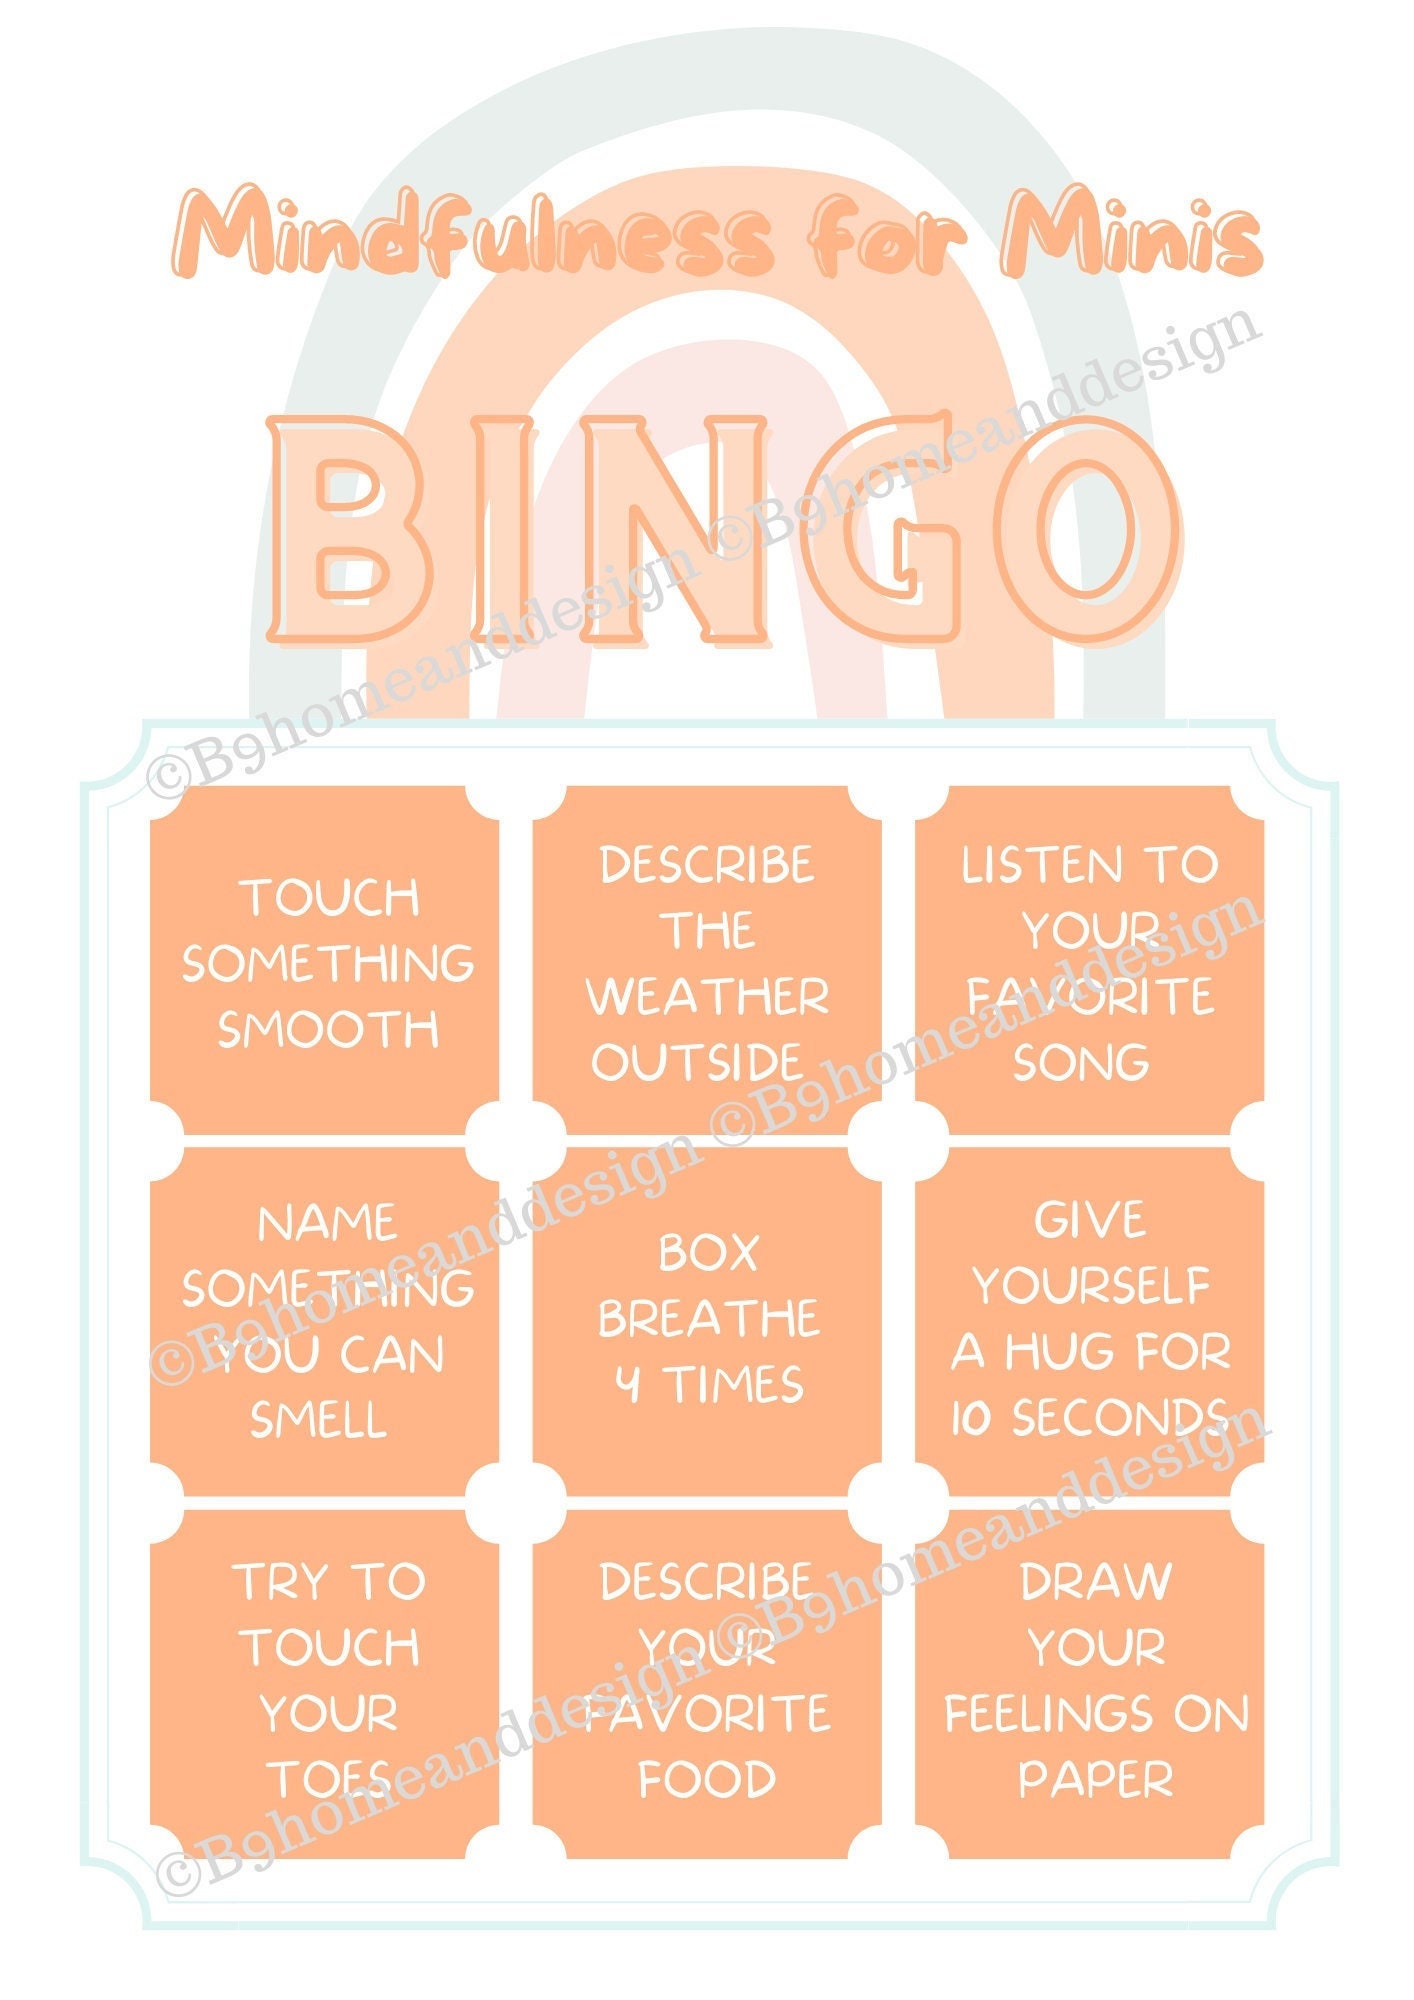 Mindfulness en el bingo